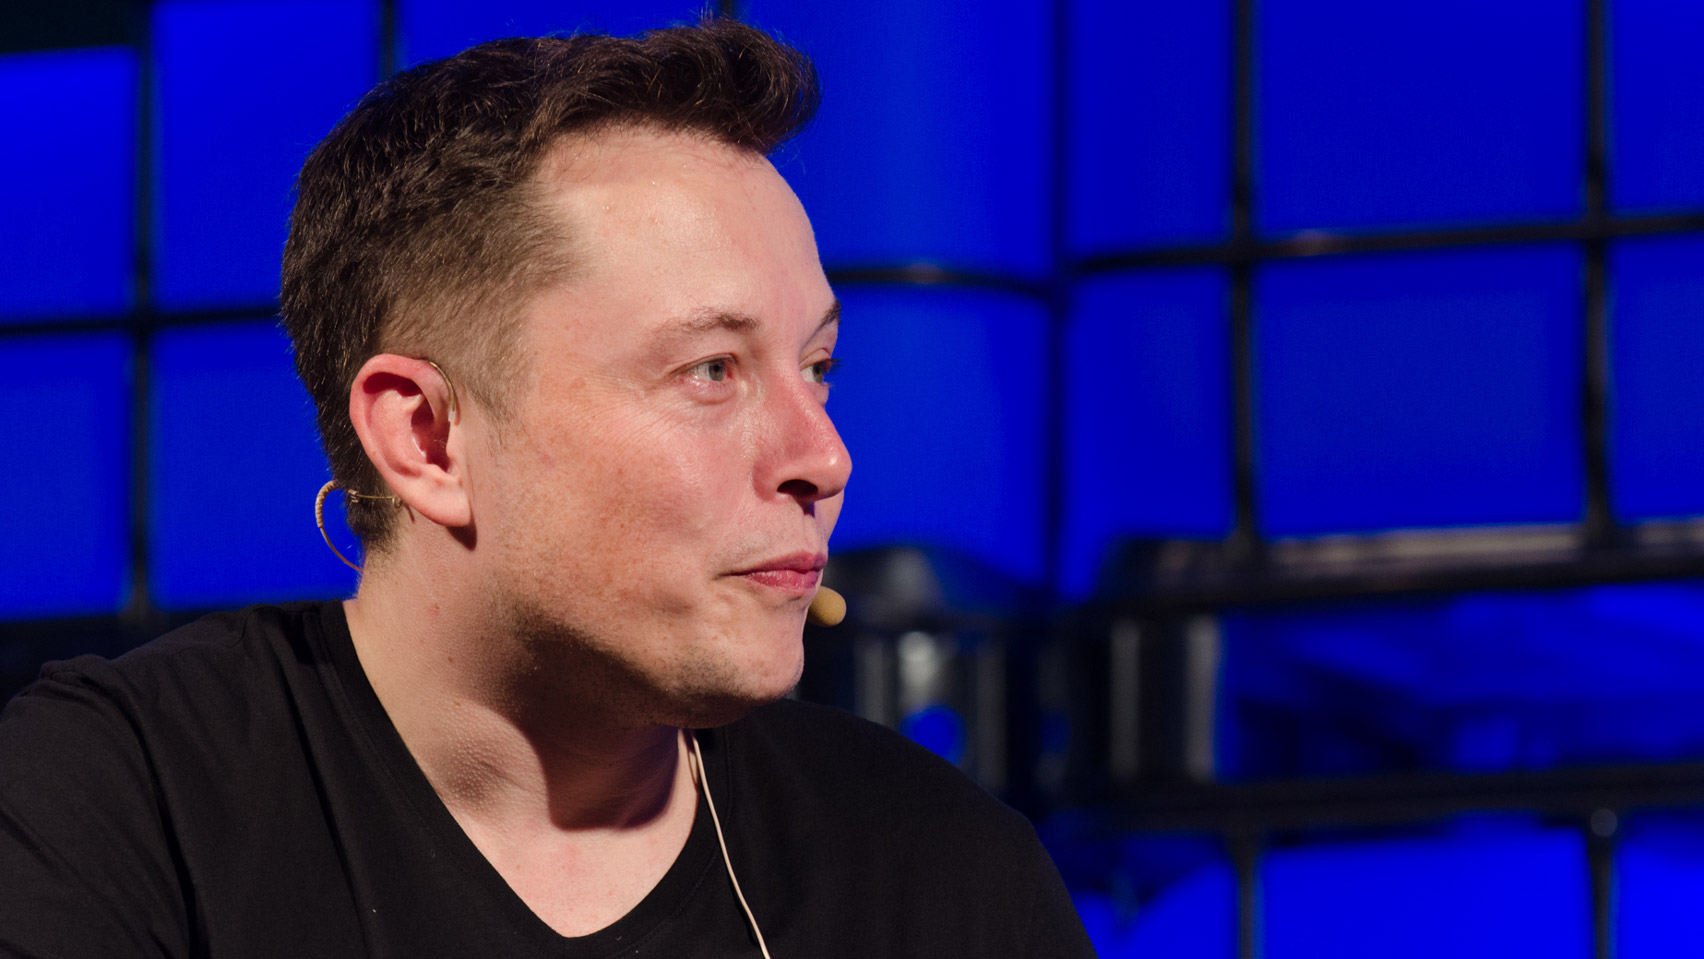 Elon Musk Twitter/X tax break in Fulton County faces backlash